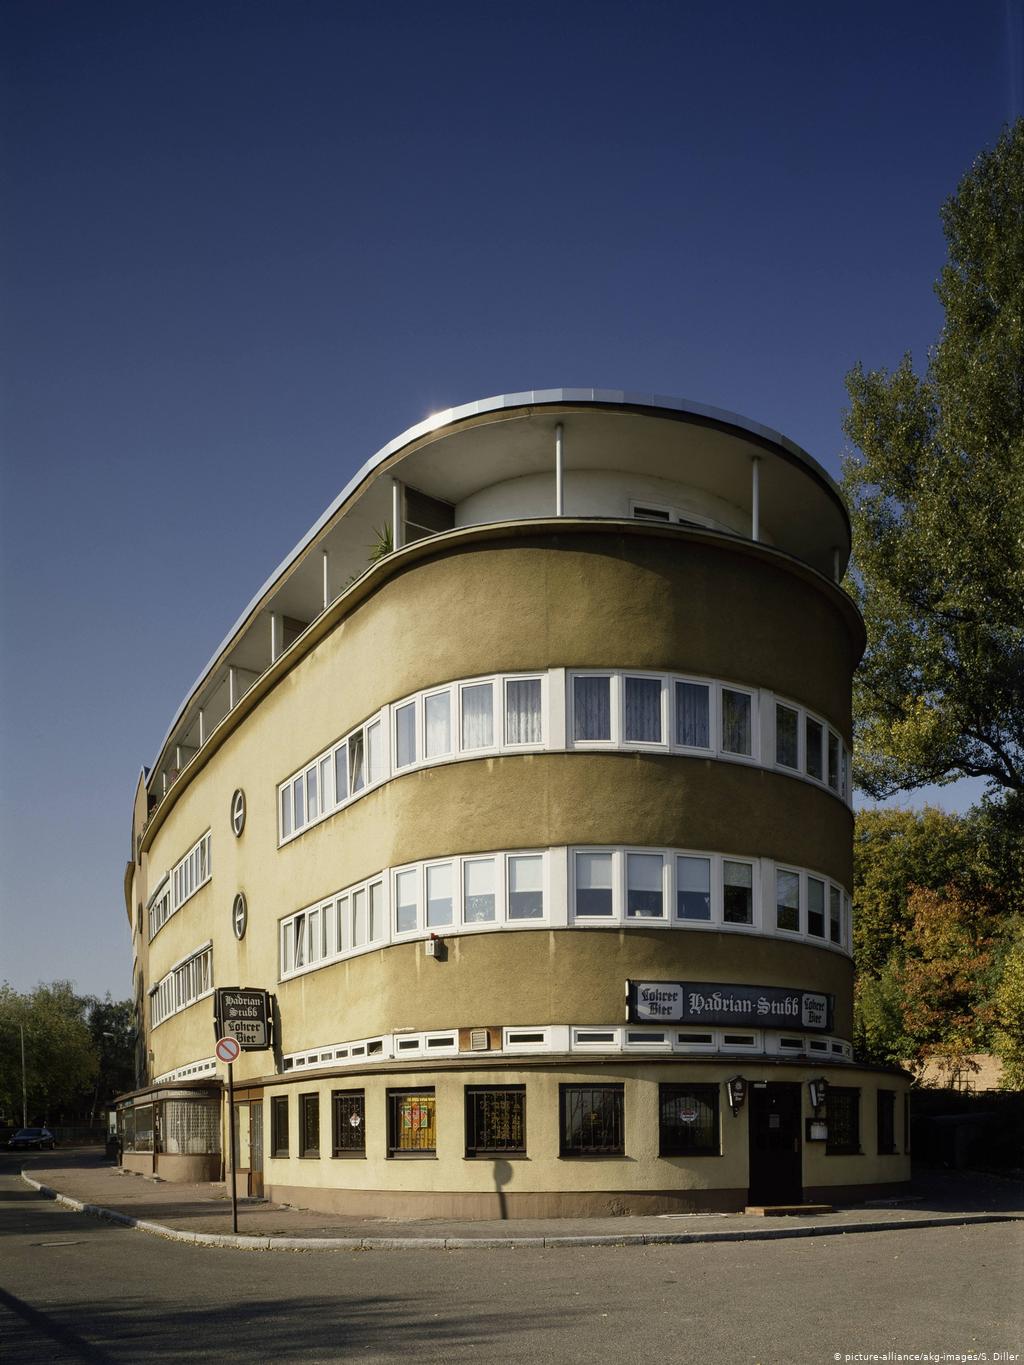 Сравните со зданием во Франкфурте, построенным в те же годы архитектором Баухауза Эрнстом Маем. Кстати, он один из первых немецких архитекторов приехал в СССР